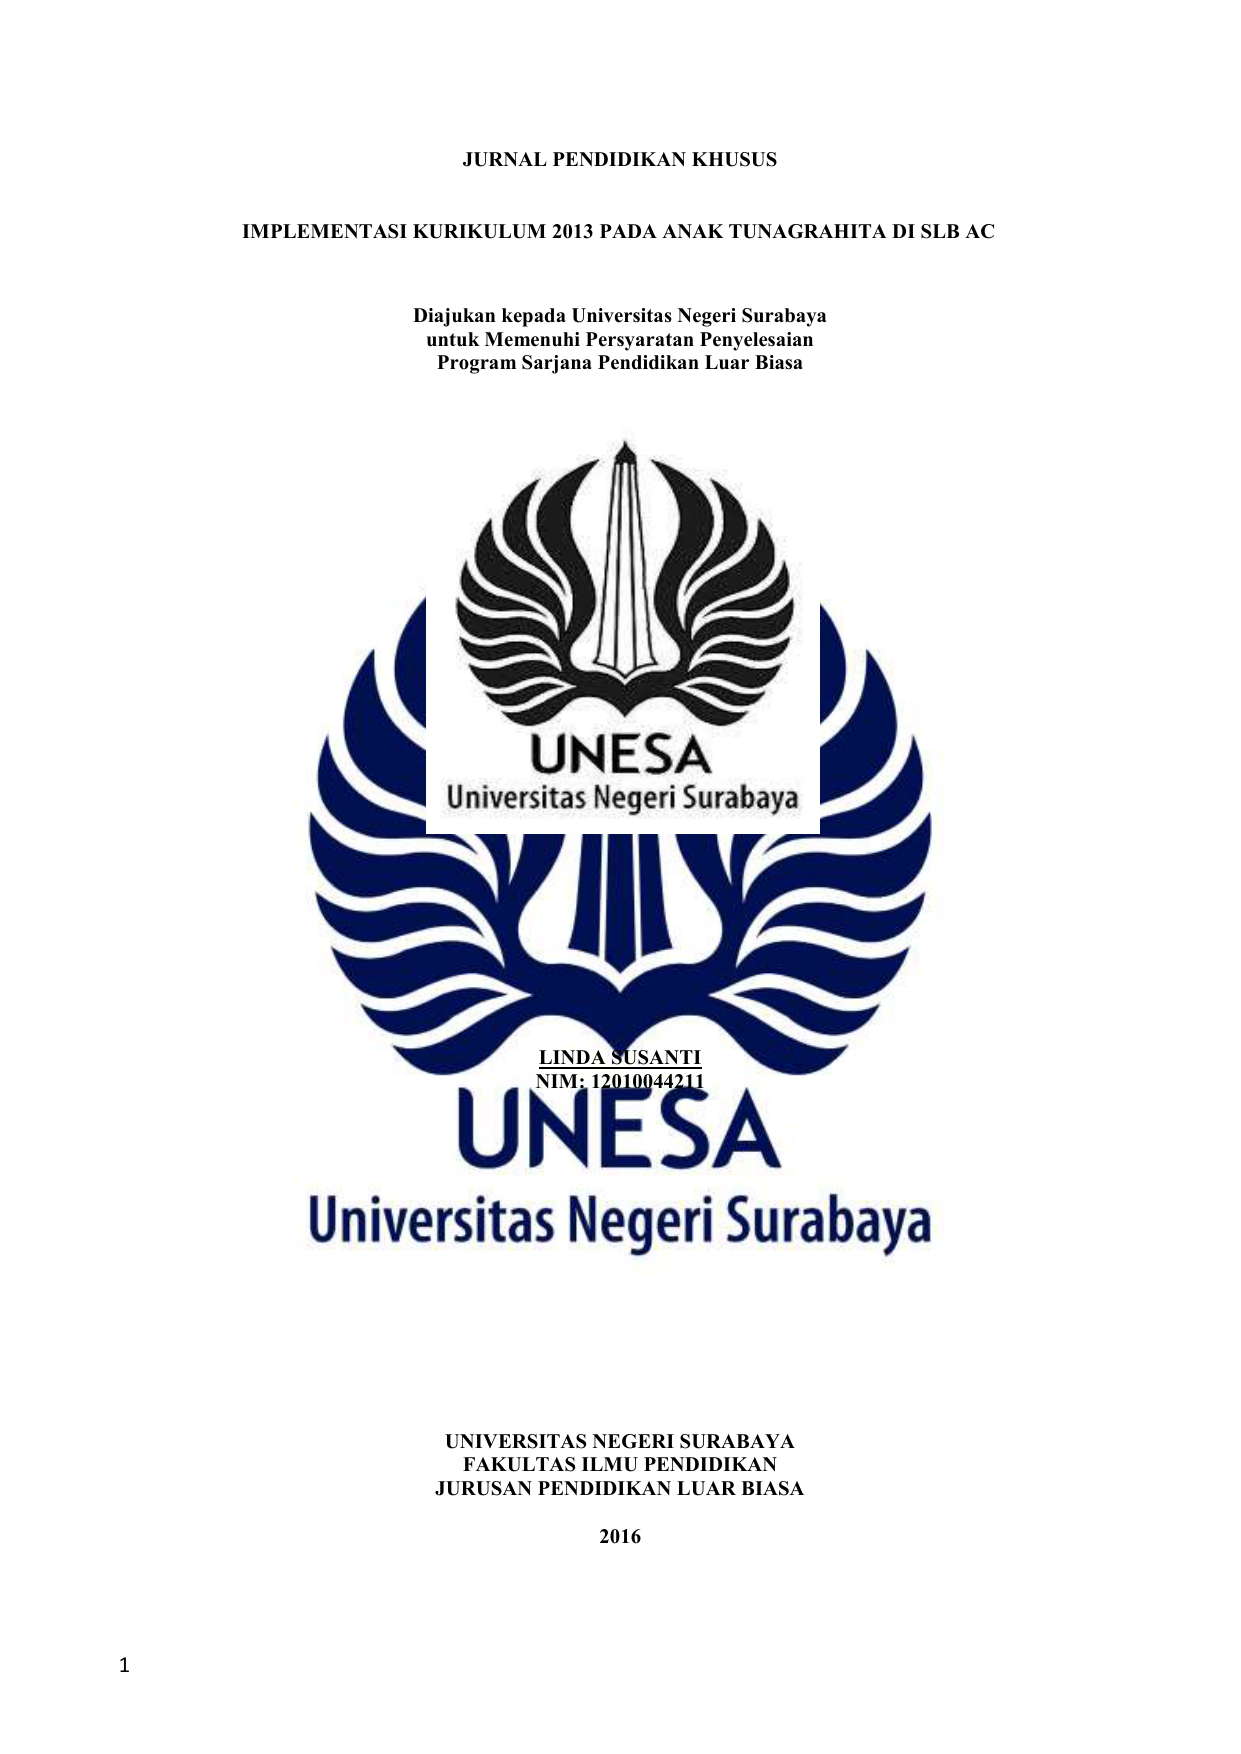 JURNAL PENDIDIKAN KHUSUS IMPLEMENTASI KURIKULUM 2013 PADA ANAK TUNAGRAHITA DI SLB AC Diajukan kepada Universitas Negeri Surabaya untuk Memenuhi Persyaratan